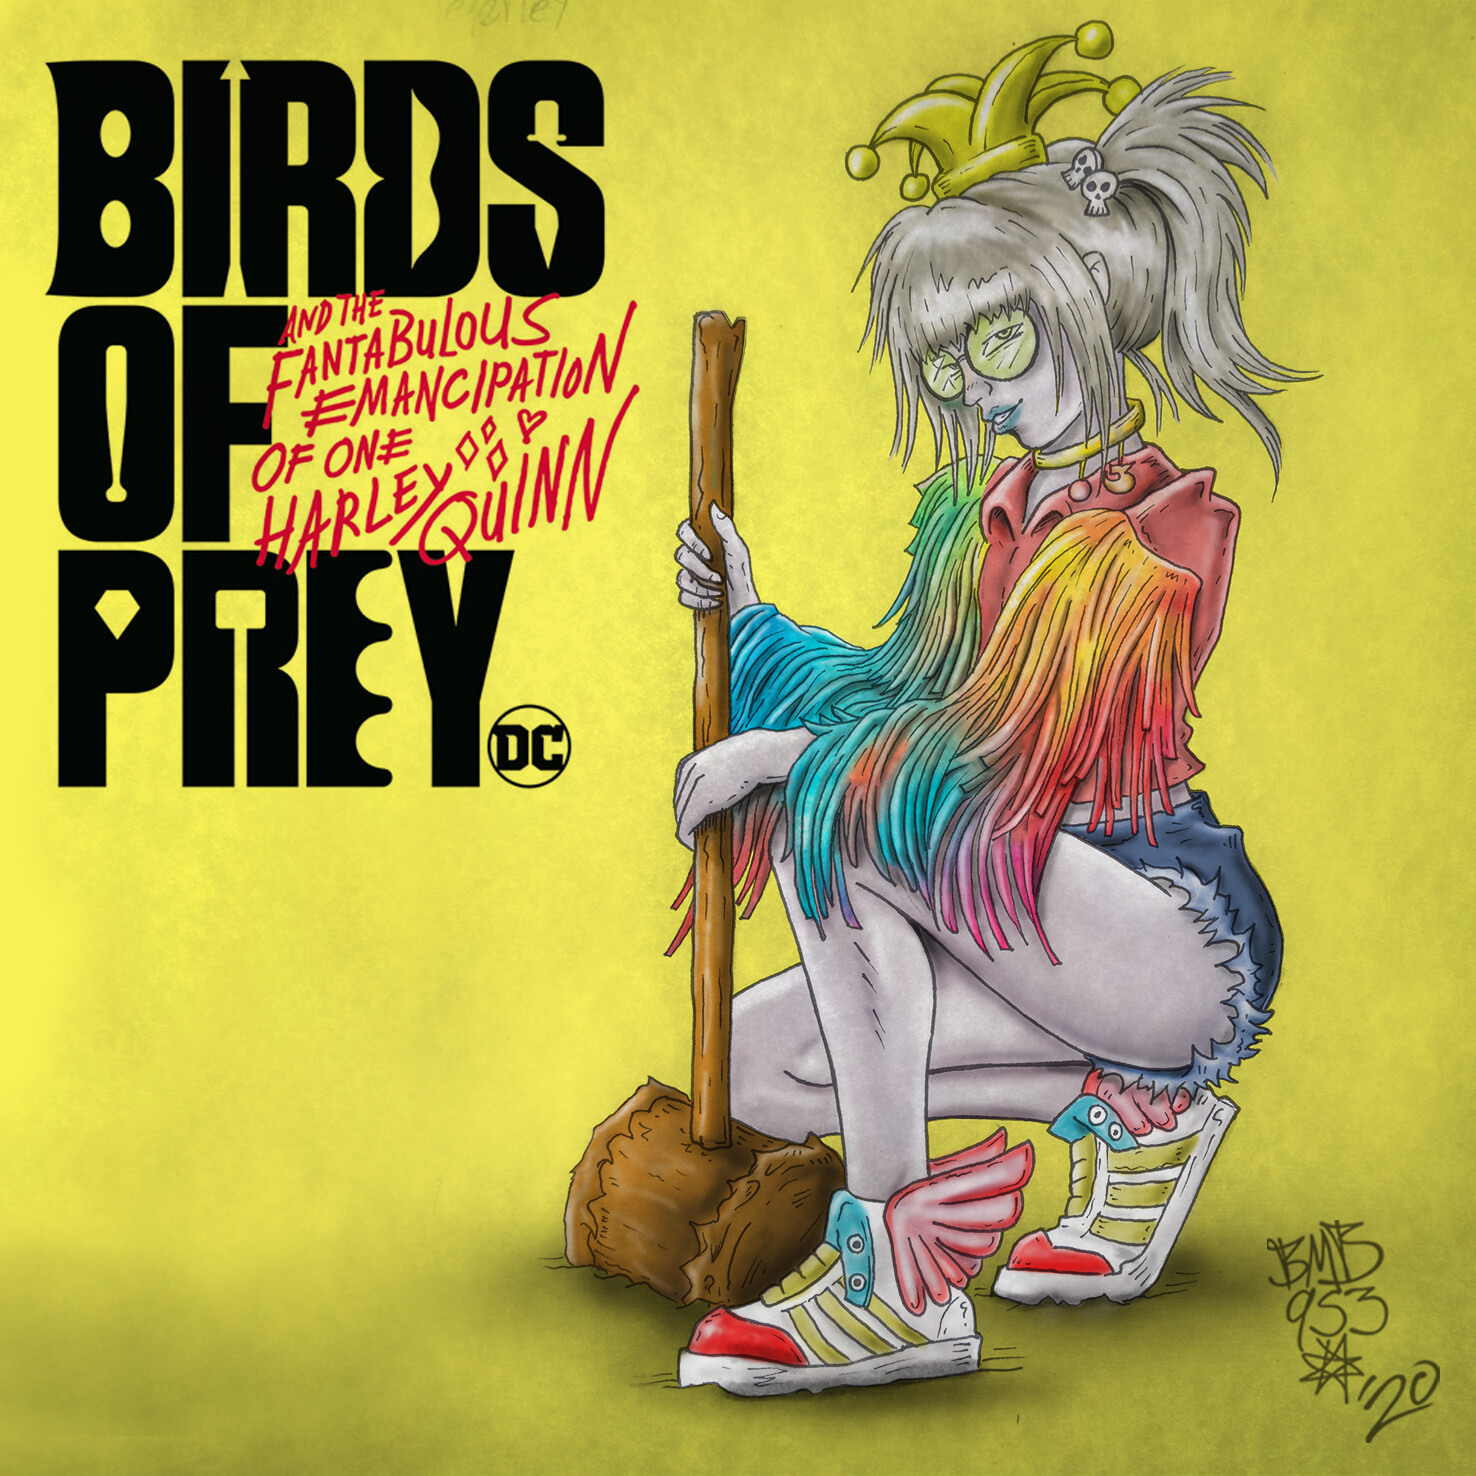 ArtStation - Harley Quinn (Birds of Prey)